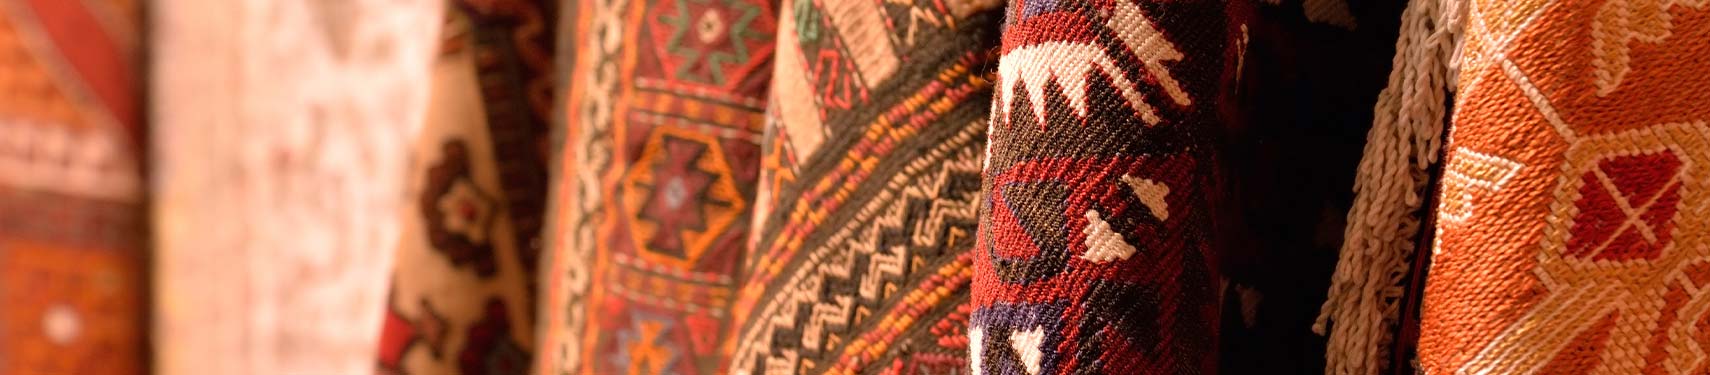 oriental rugs hanging